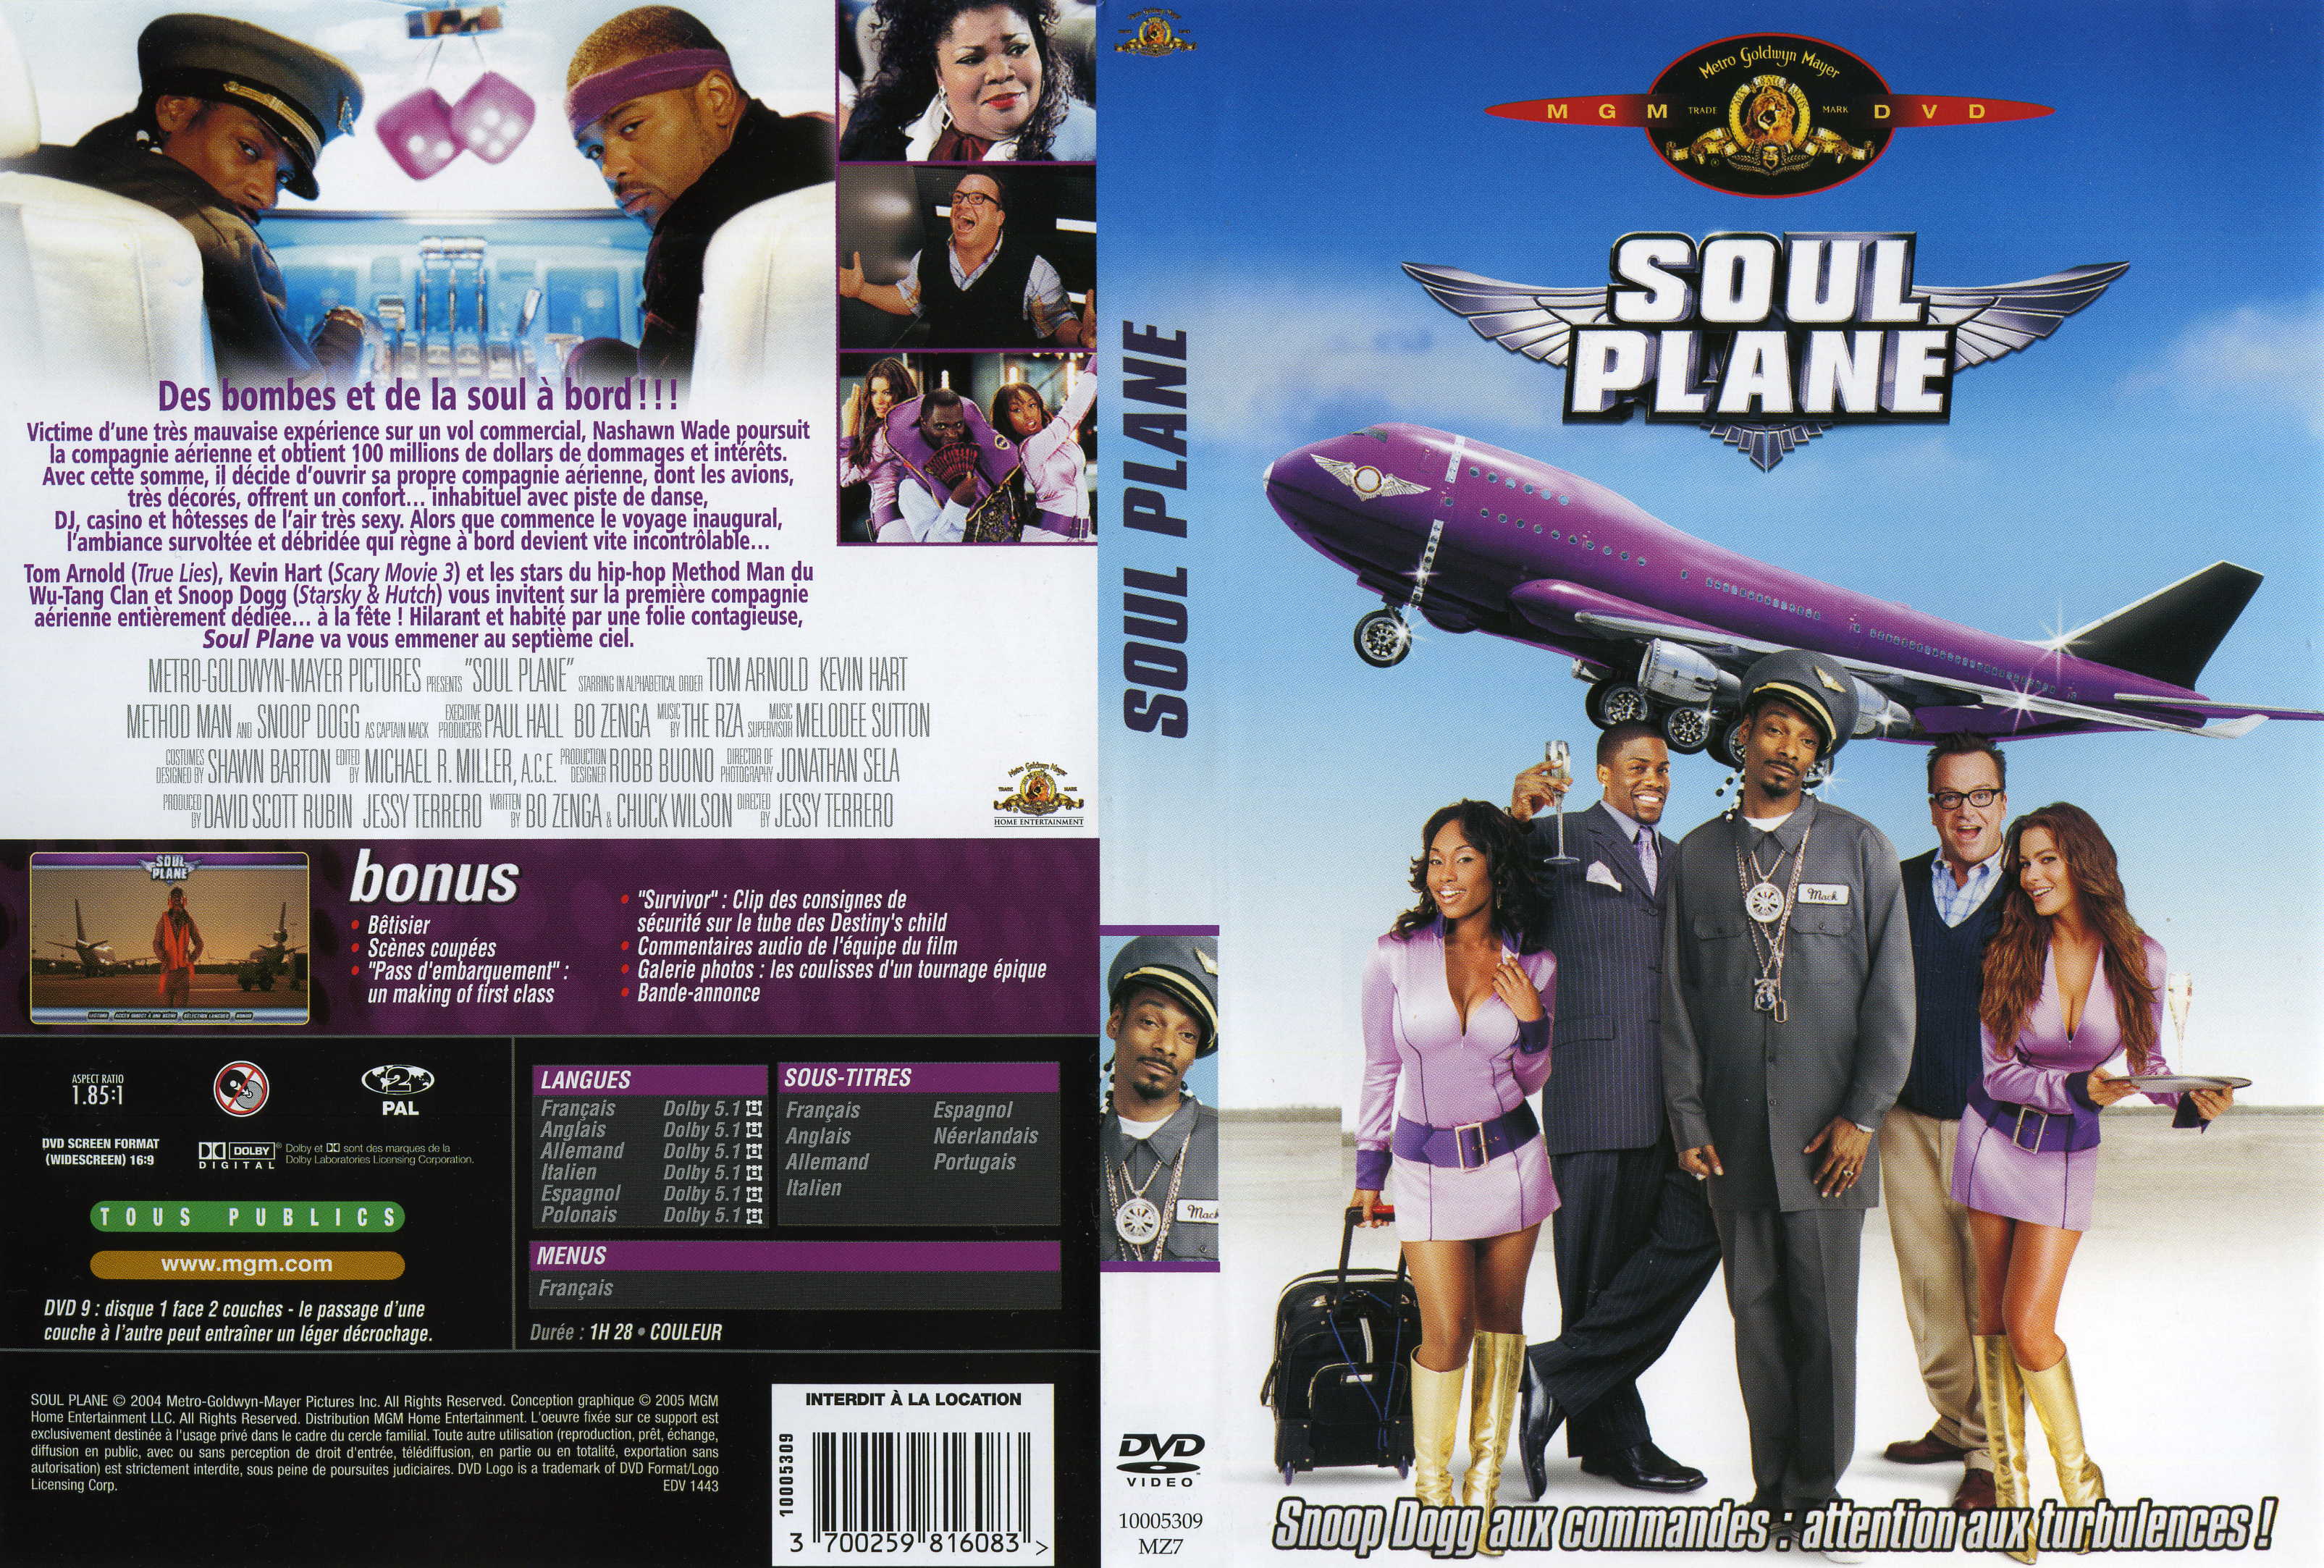 Jaquette DVD Soul plane